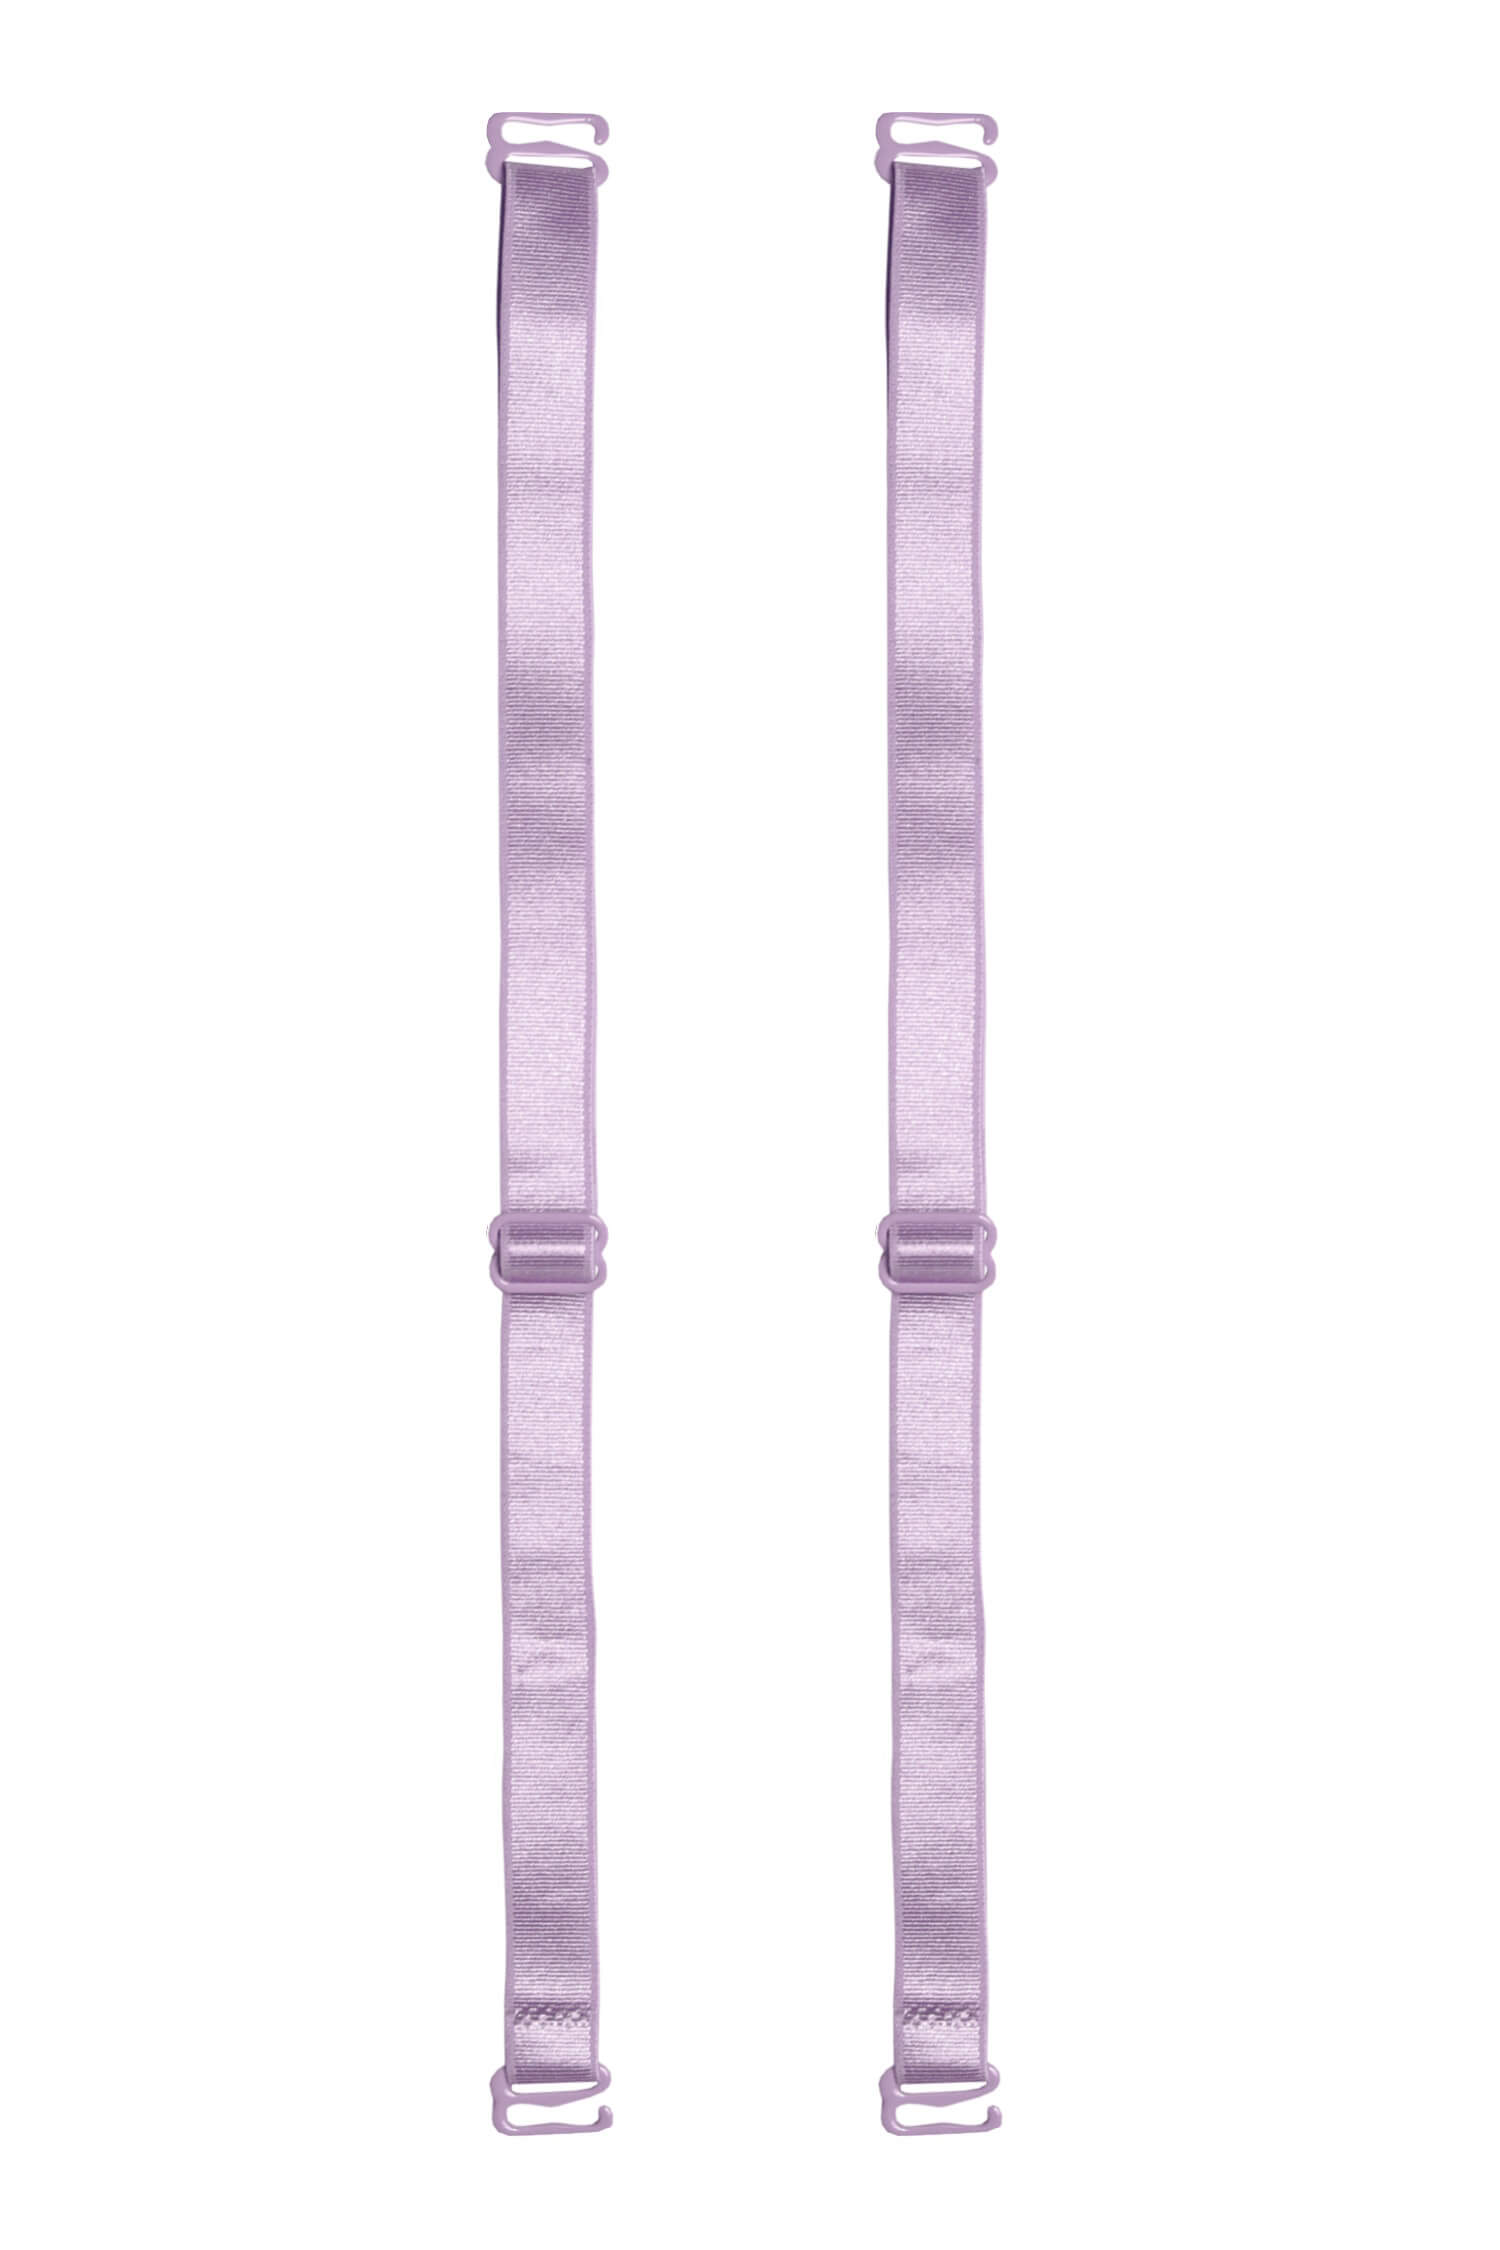 12 mm - textilní ramínka k podprsence fialová